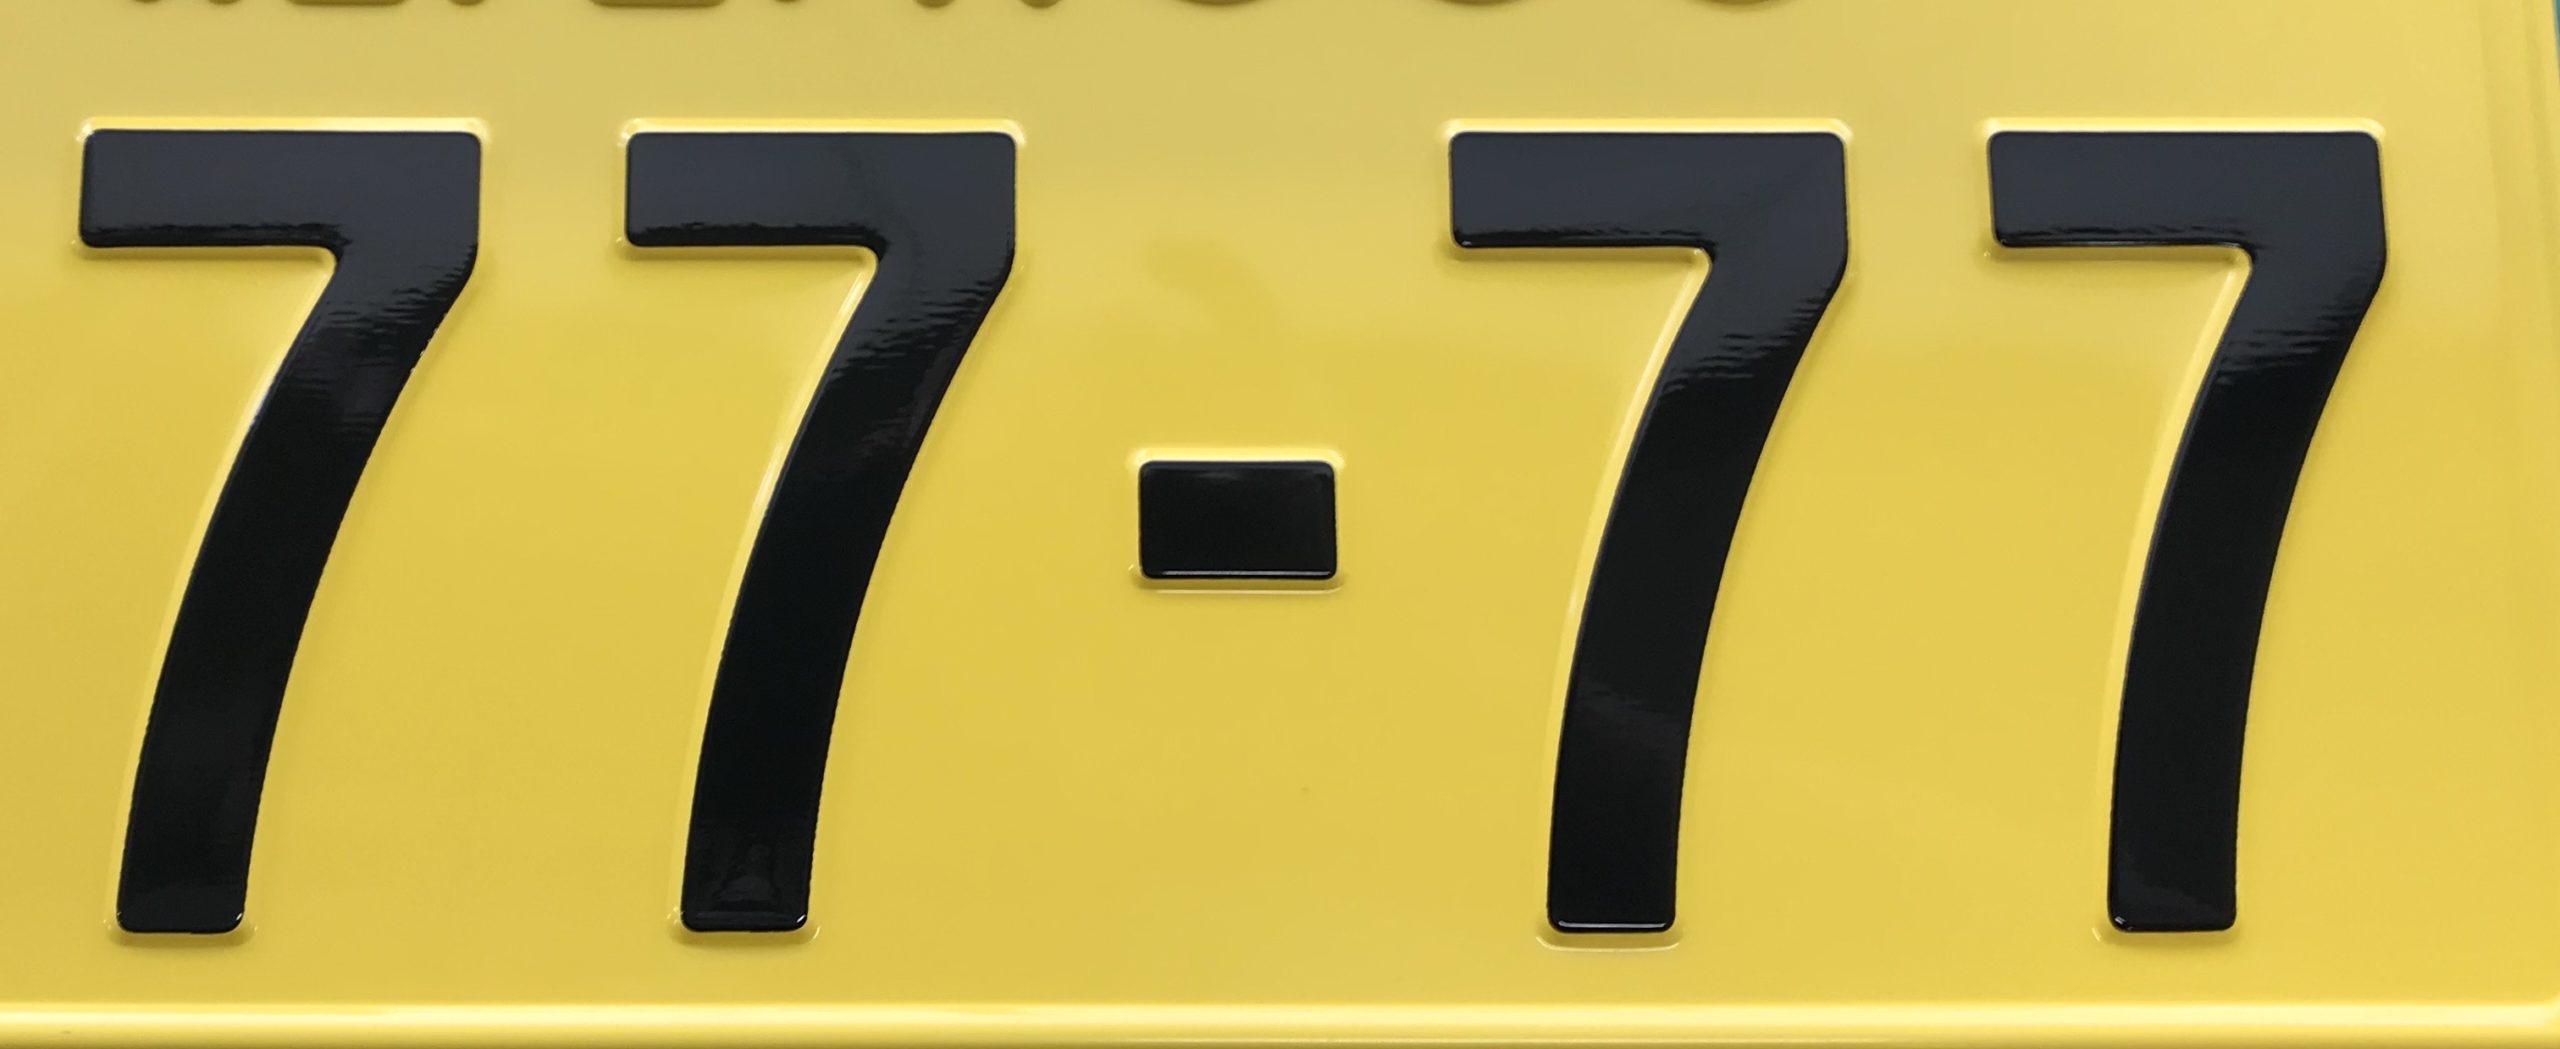 希望ナンバー 7777 を取得 特殊ナンバーなら意外と当たる 自動車 バイクの手続代行 新規登録 名義変更 即日対応